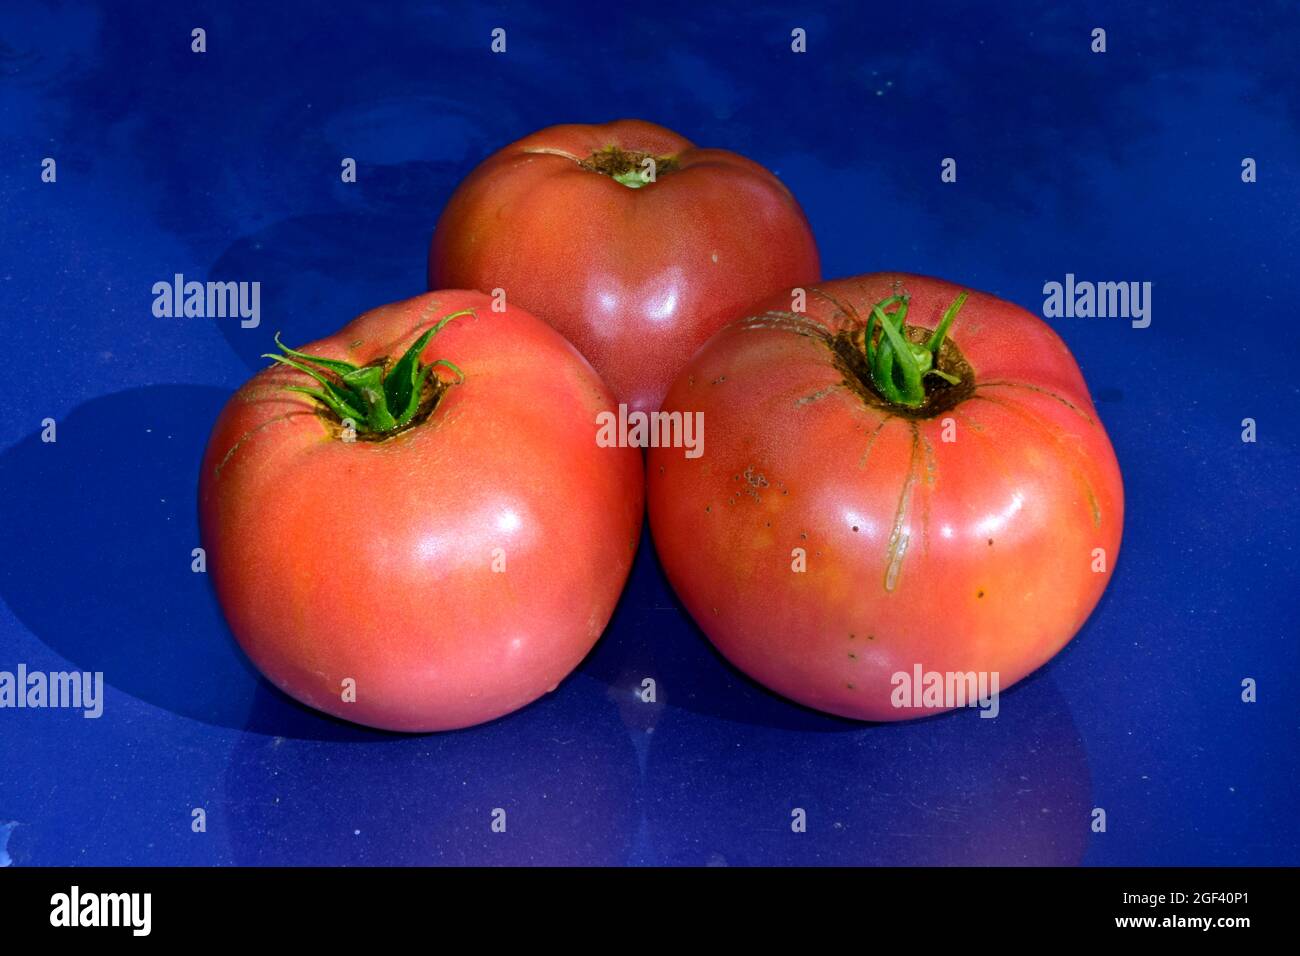 Trois tomates globulaire, mûres et rouges avec tige verte fraîchement cueillies et placées sur une surface bleue brillante, réfléchissante en vue rapprochée Banque D'Images